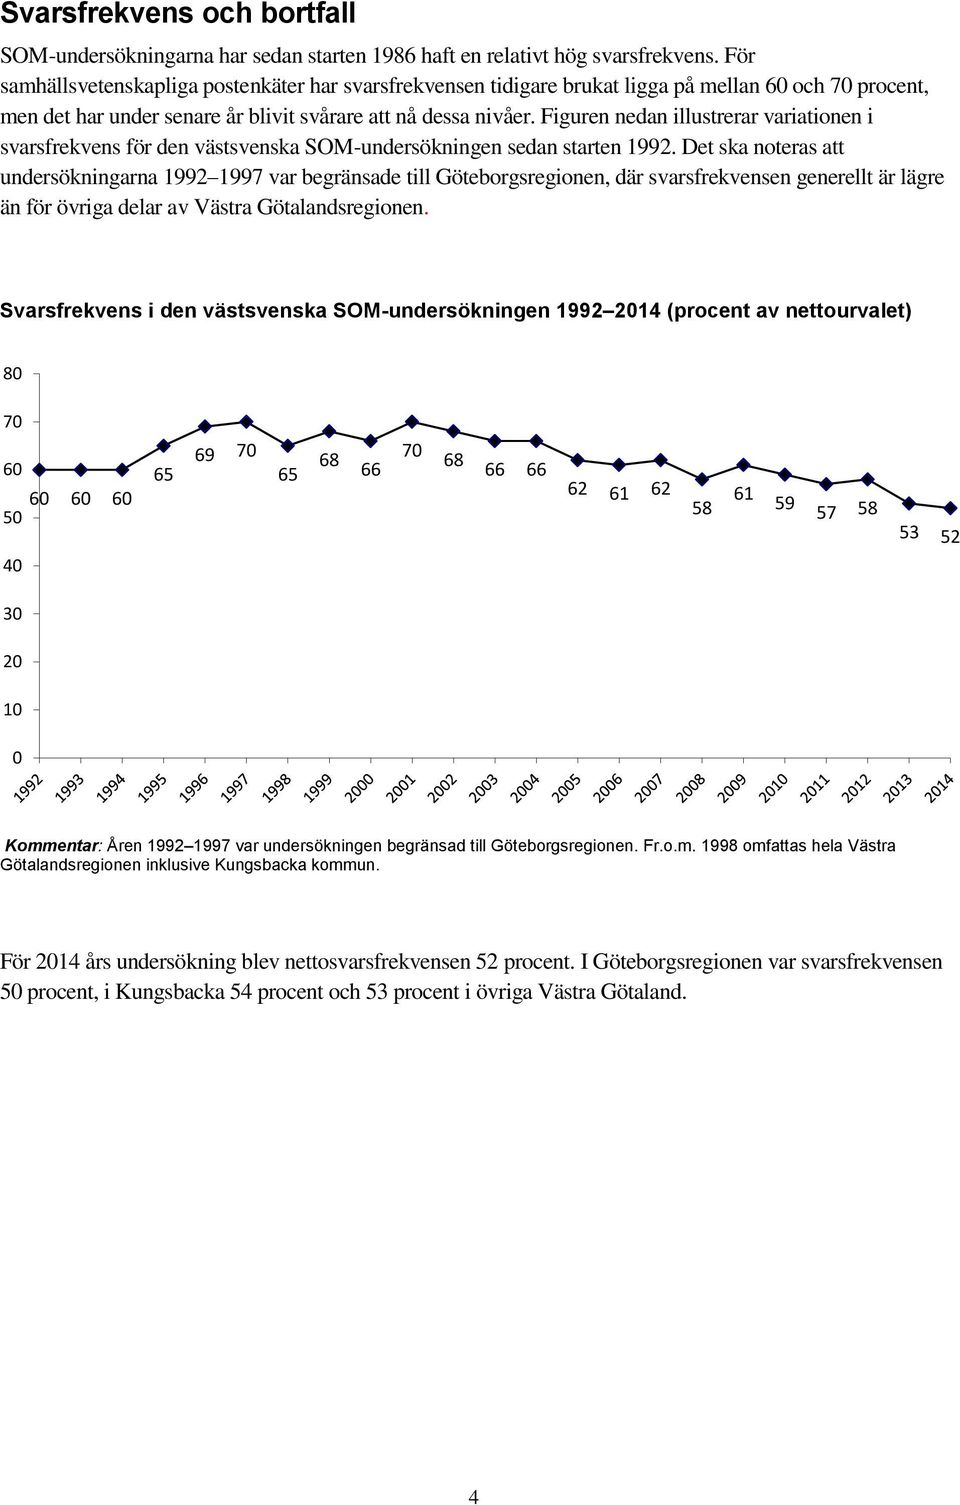 Figuren nedan illustrerar variationen i svarsfrekvens för den västsvenska SOM-undersökningen sedan starten 1992.